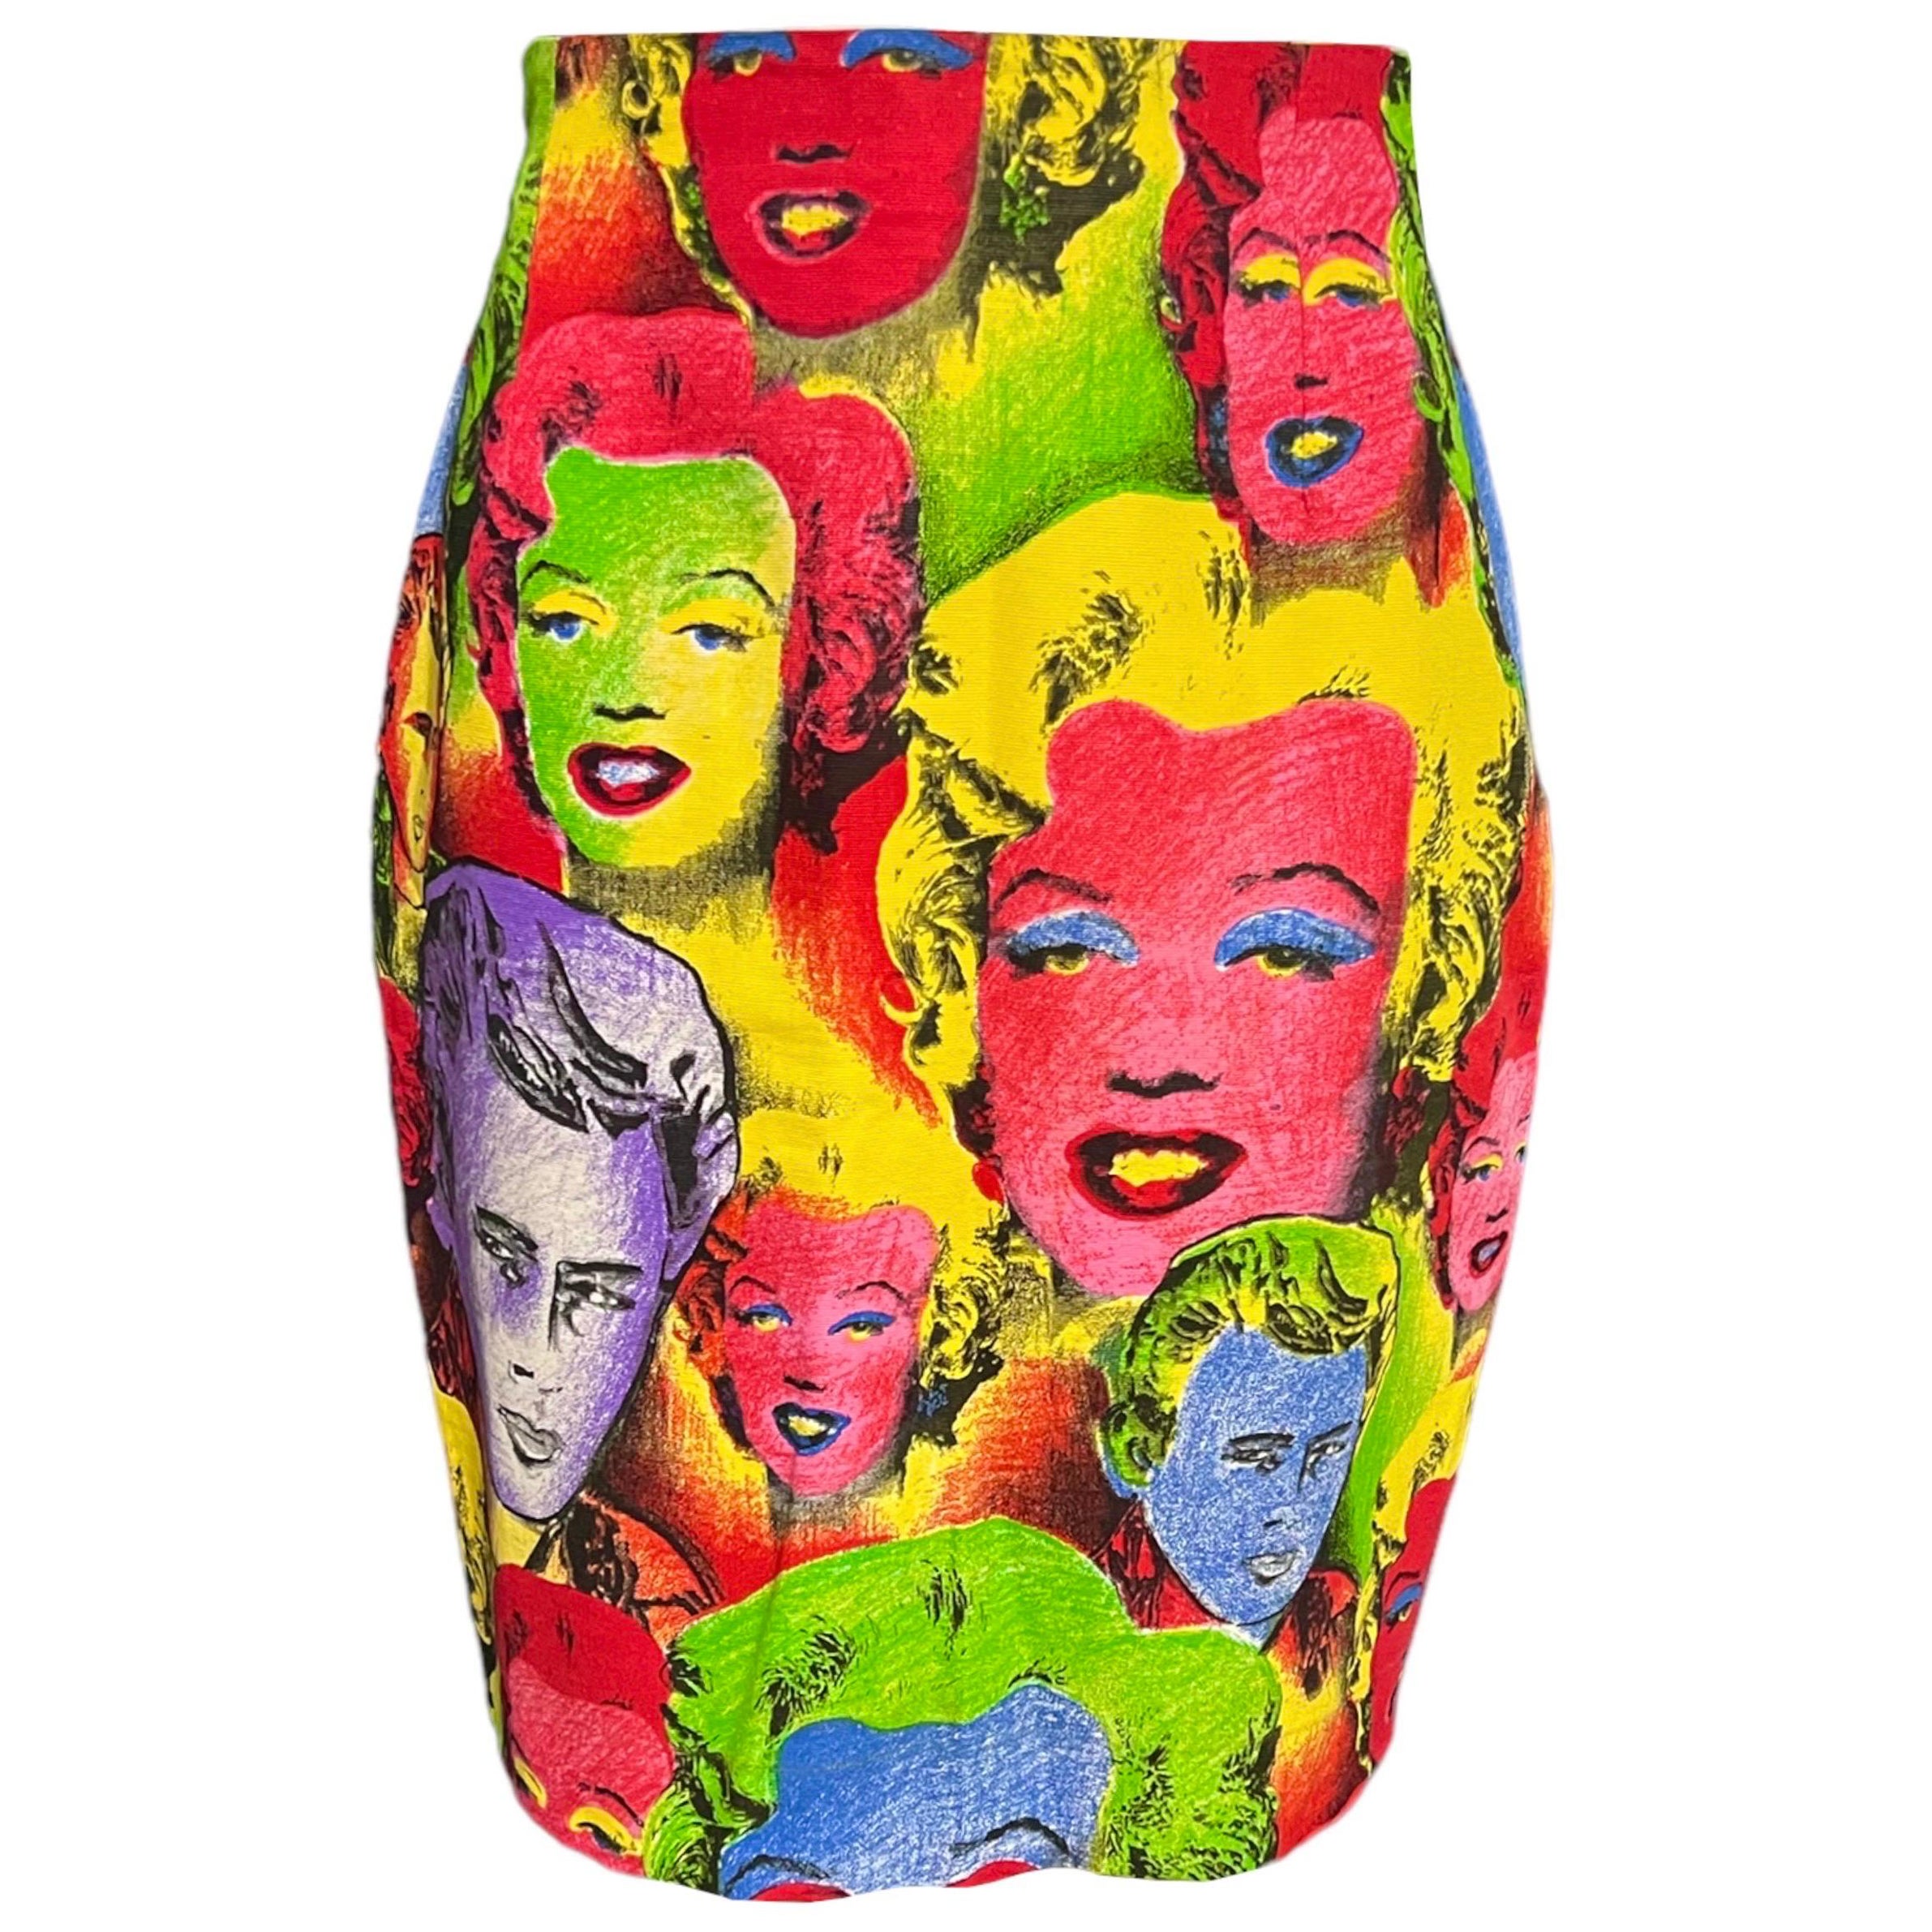 S/S 1991 Gianni Versace Marilyn Monroe James Dean Warhol Printed Skirt